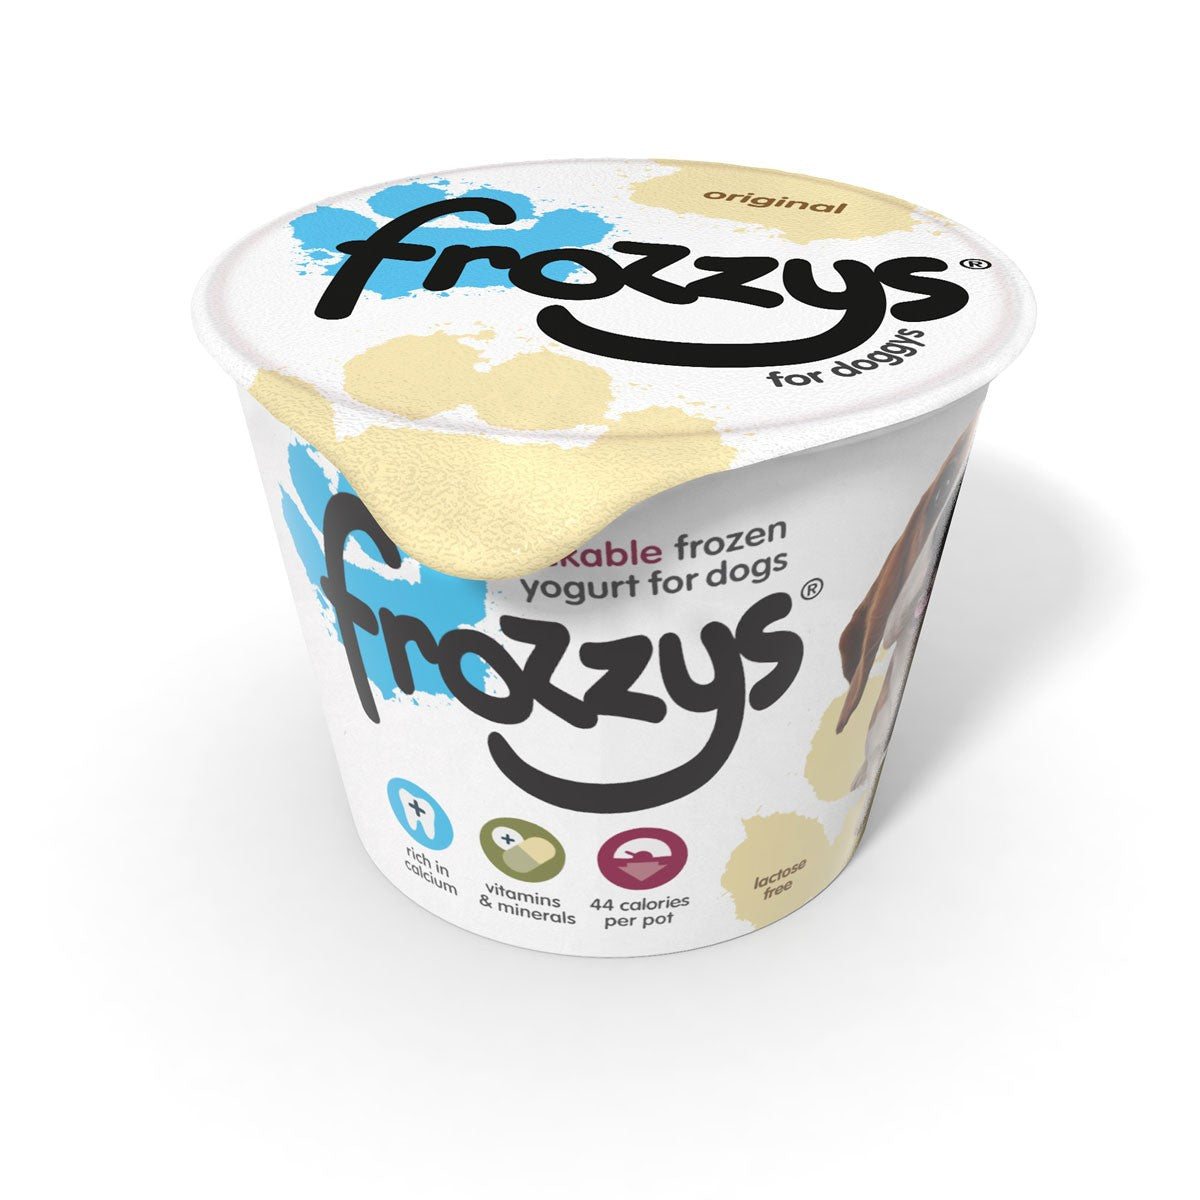 Frozzys Frozen Yoghurt - Original